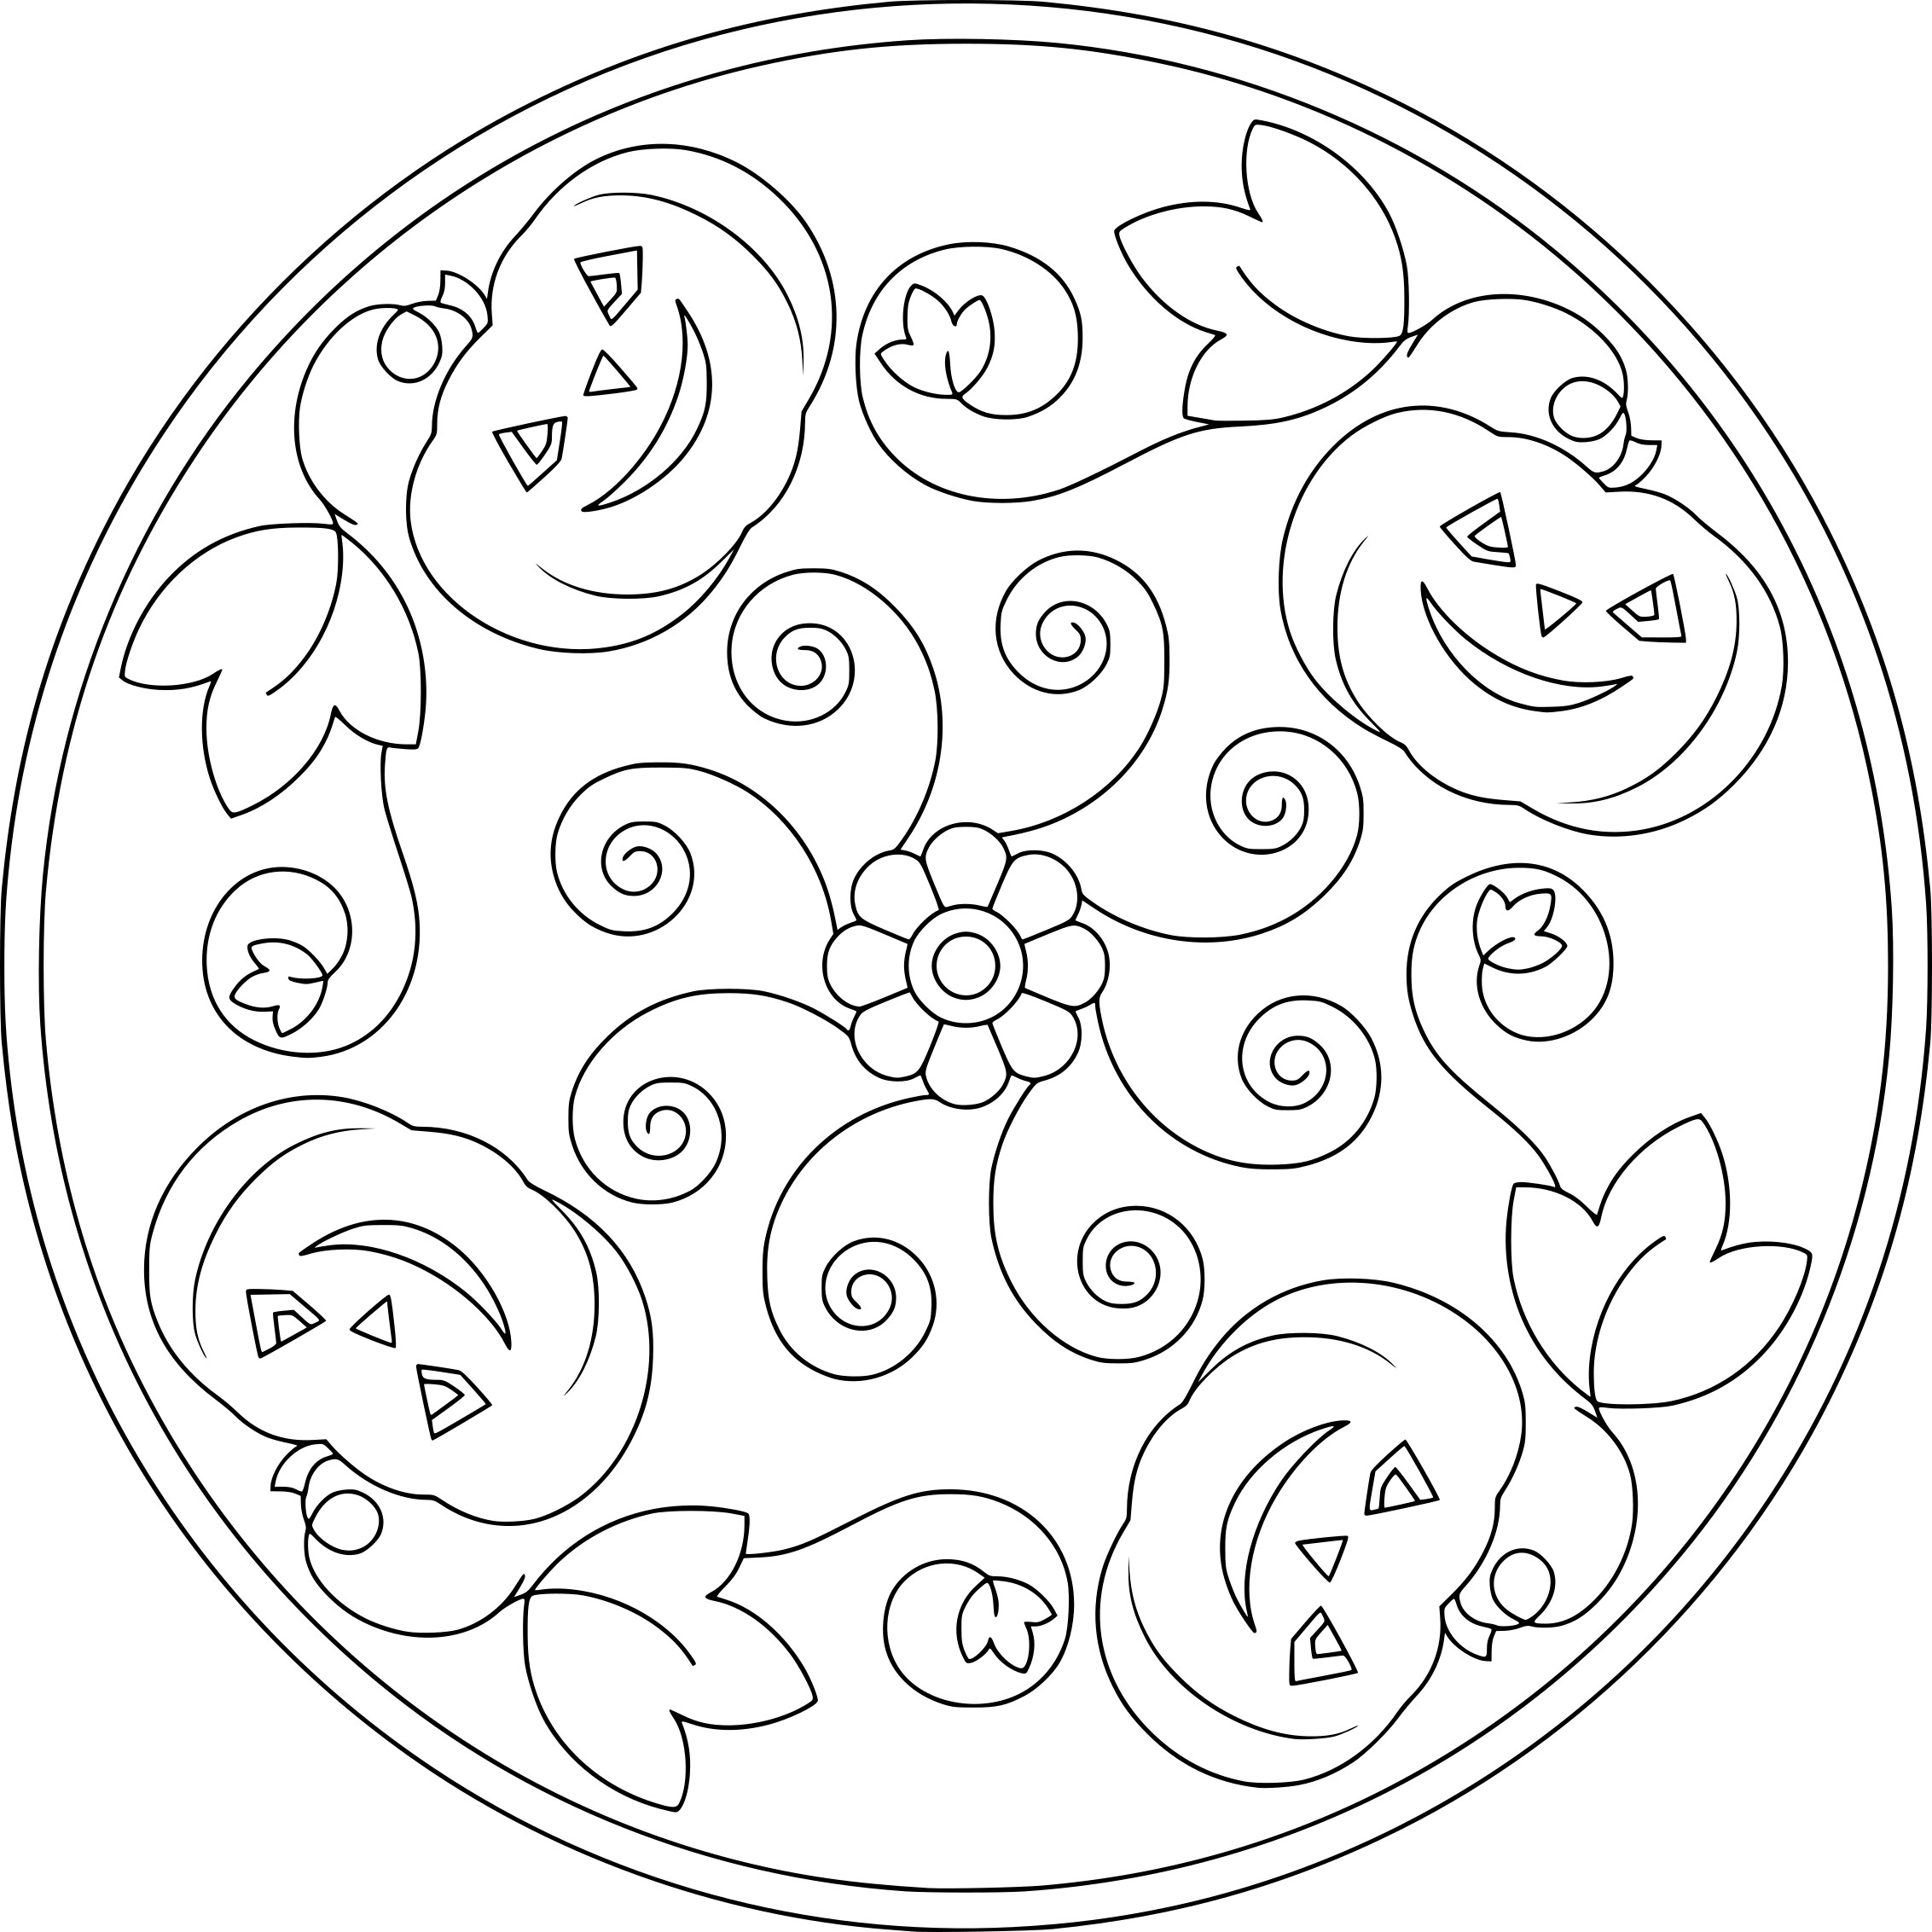 Halloween Mandala drawing and coloring page